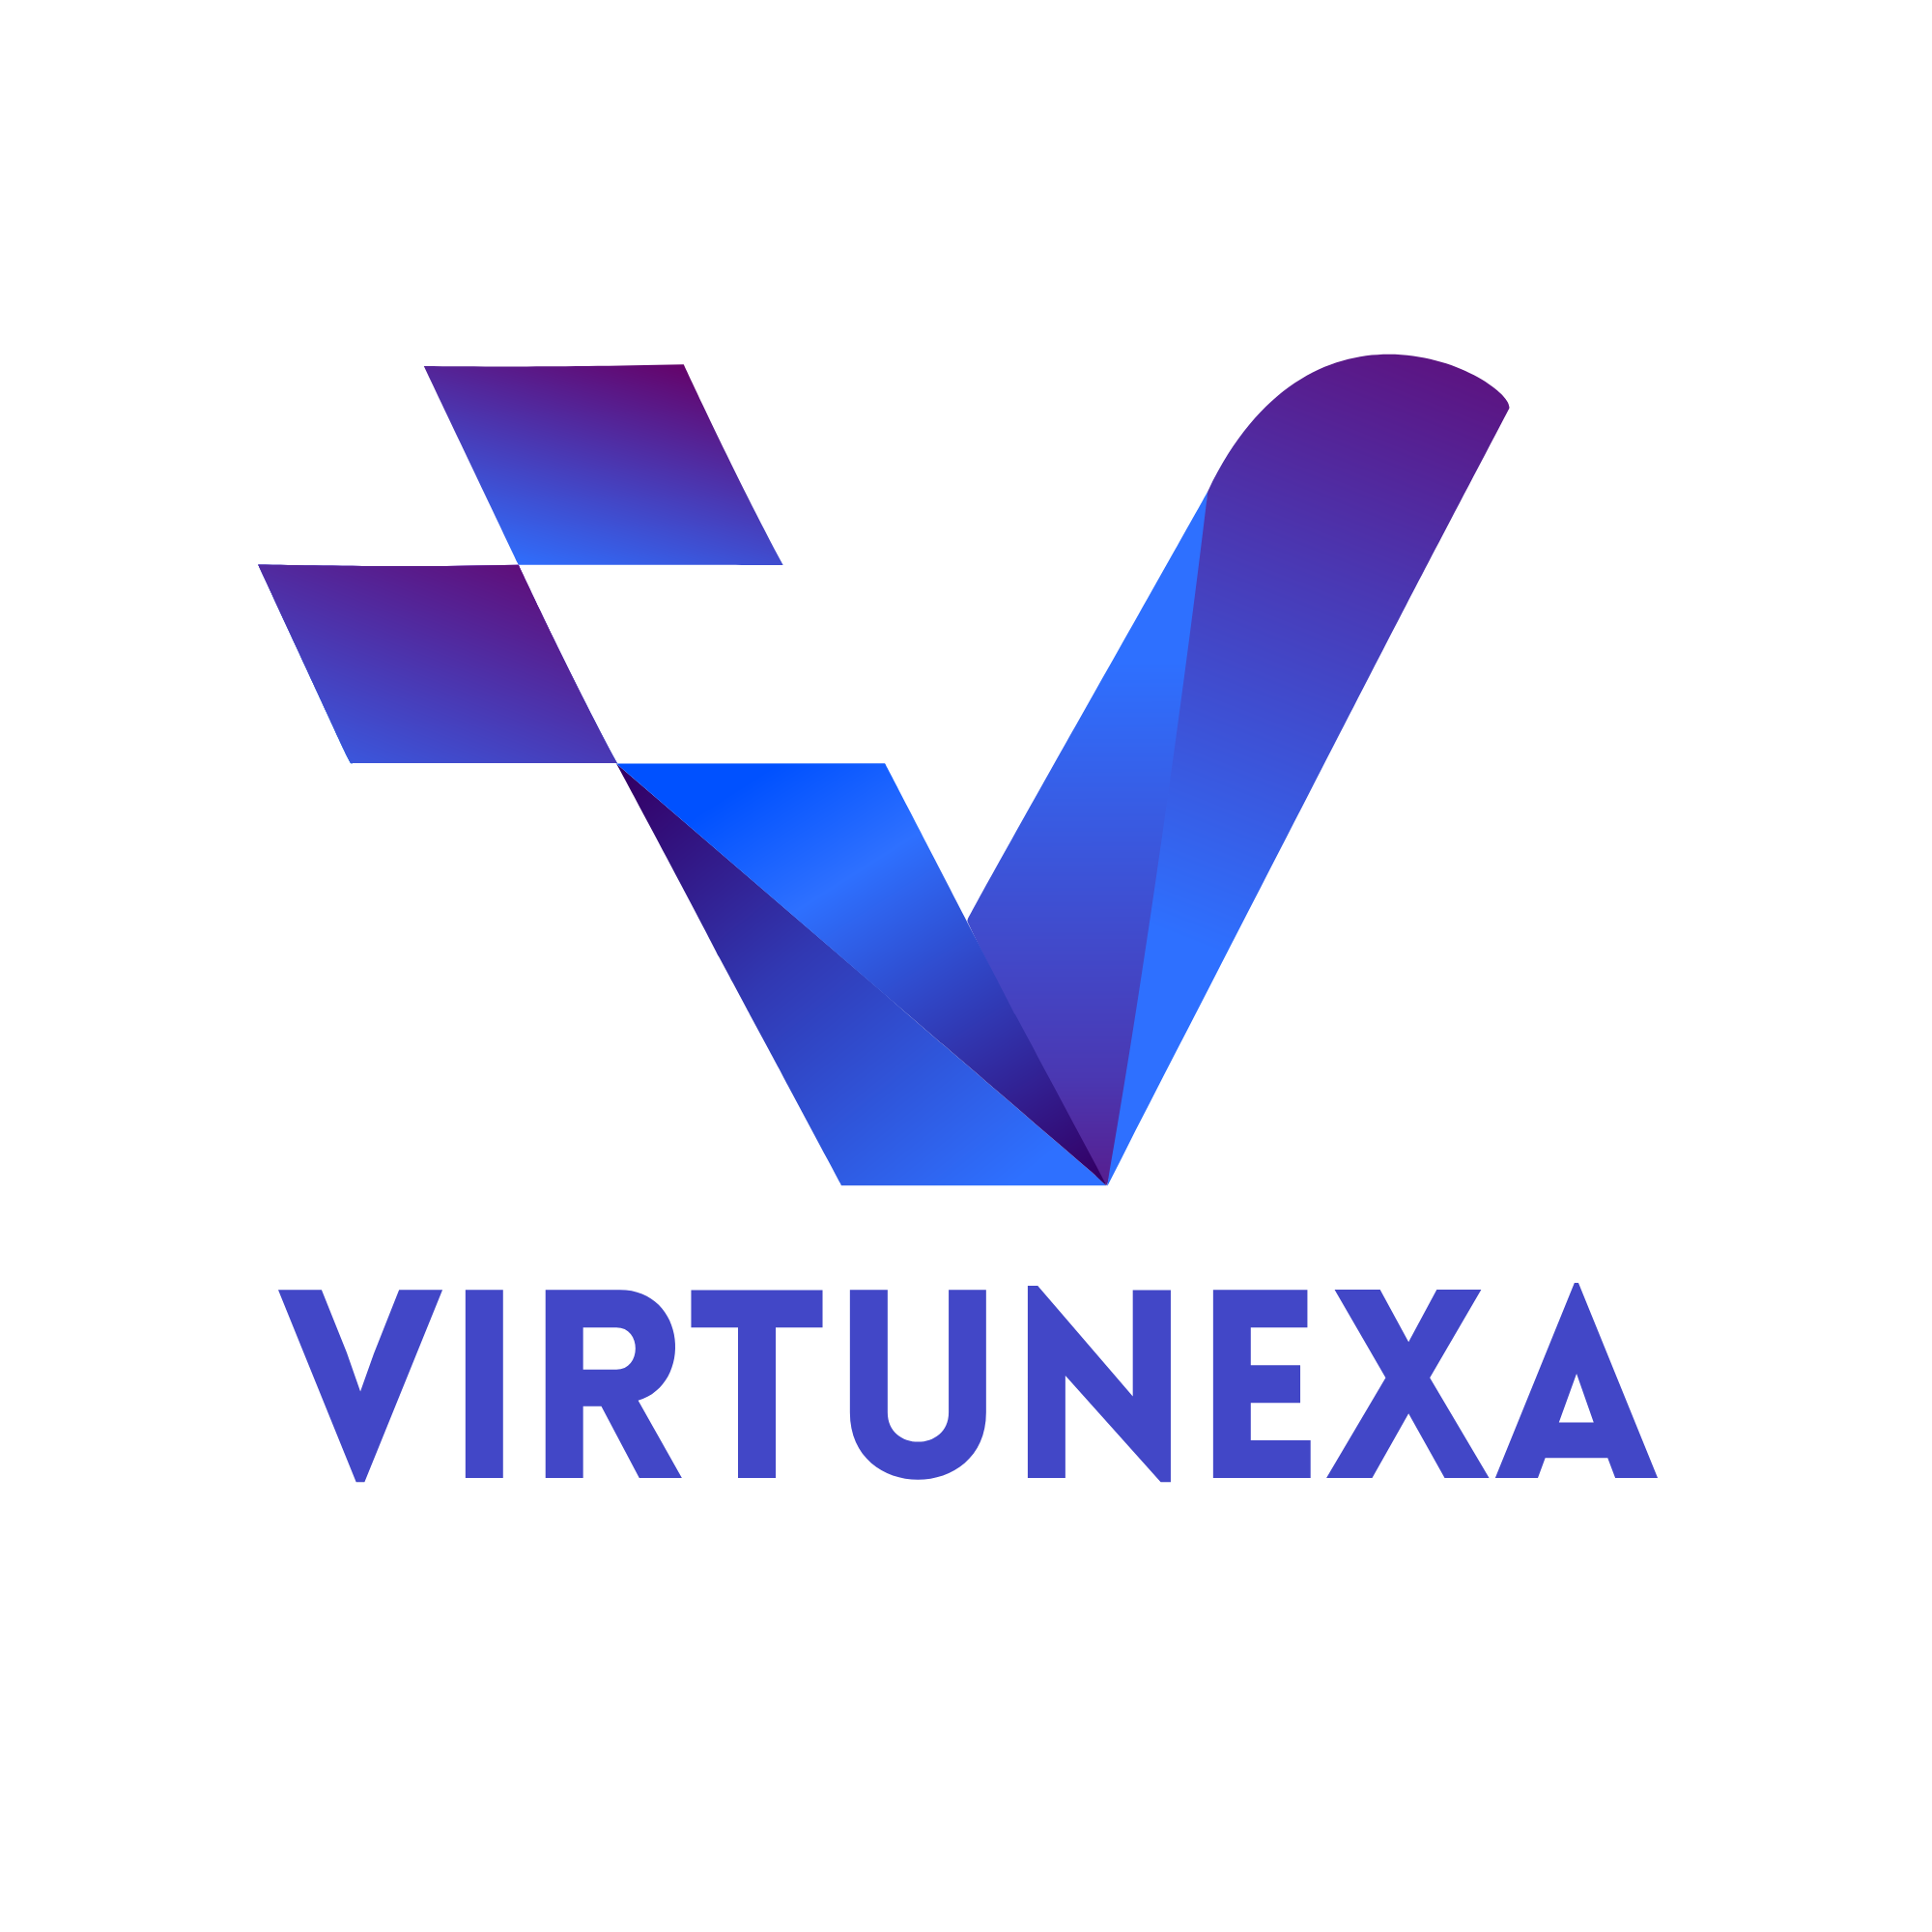 VirtuNexa